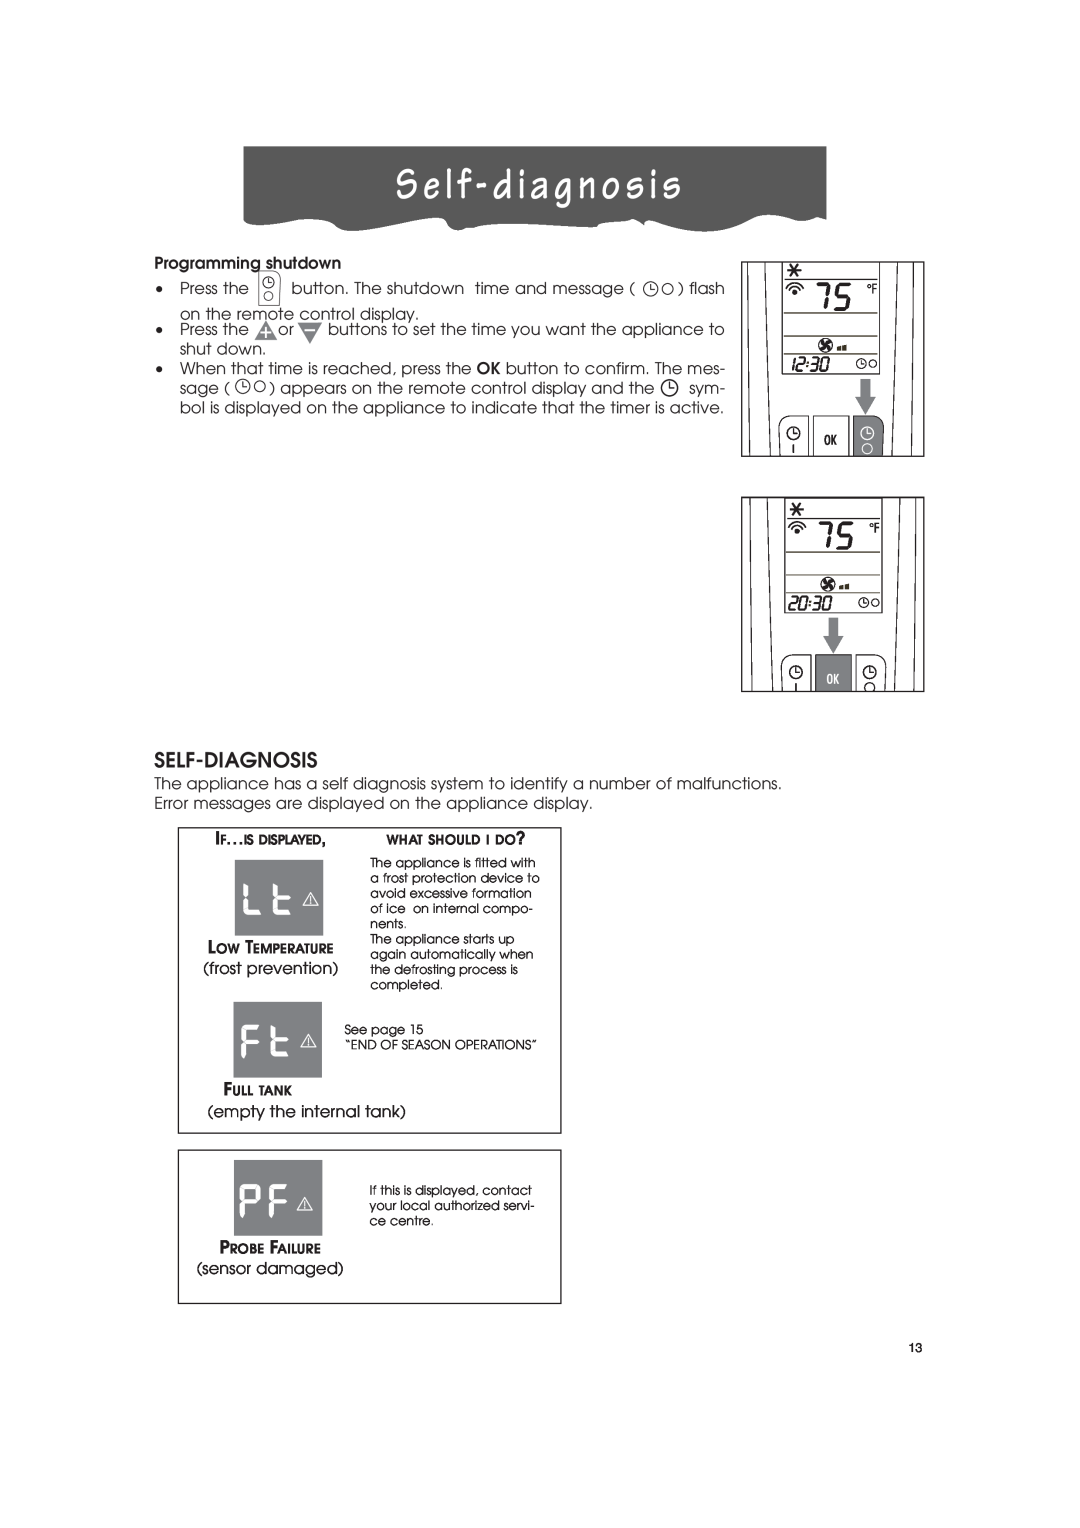 DeLonghi PAC-A130HPE instruction manual S e l f - d i a g n o s i s, Self-Diagnosis 